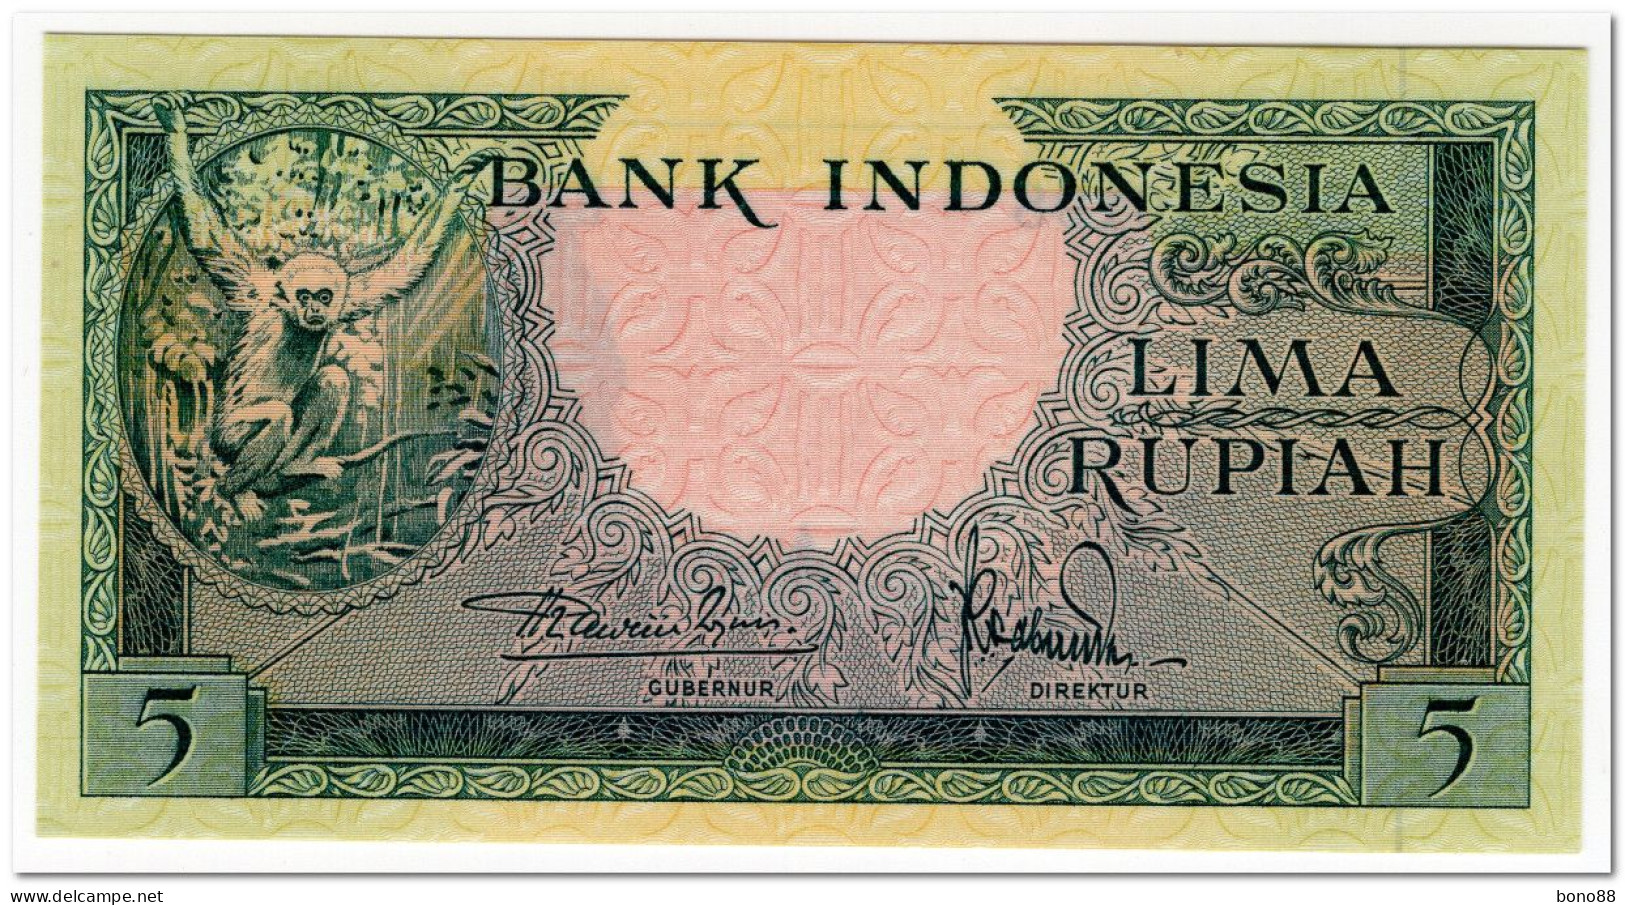 INDONESIA,5 RUPIAH,1957,P.49,UNC - Indonesien